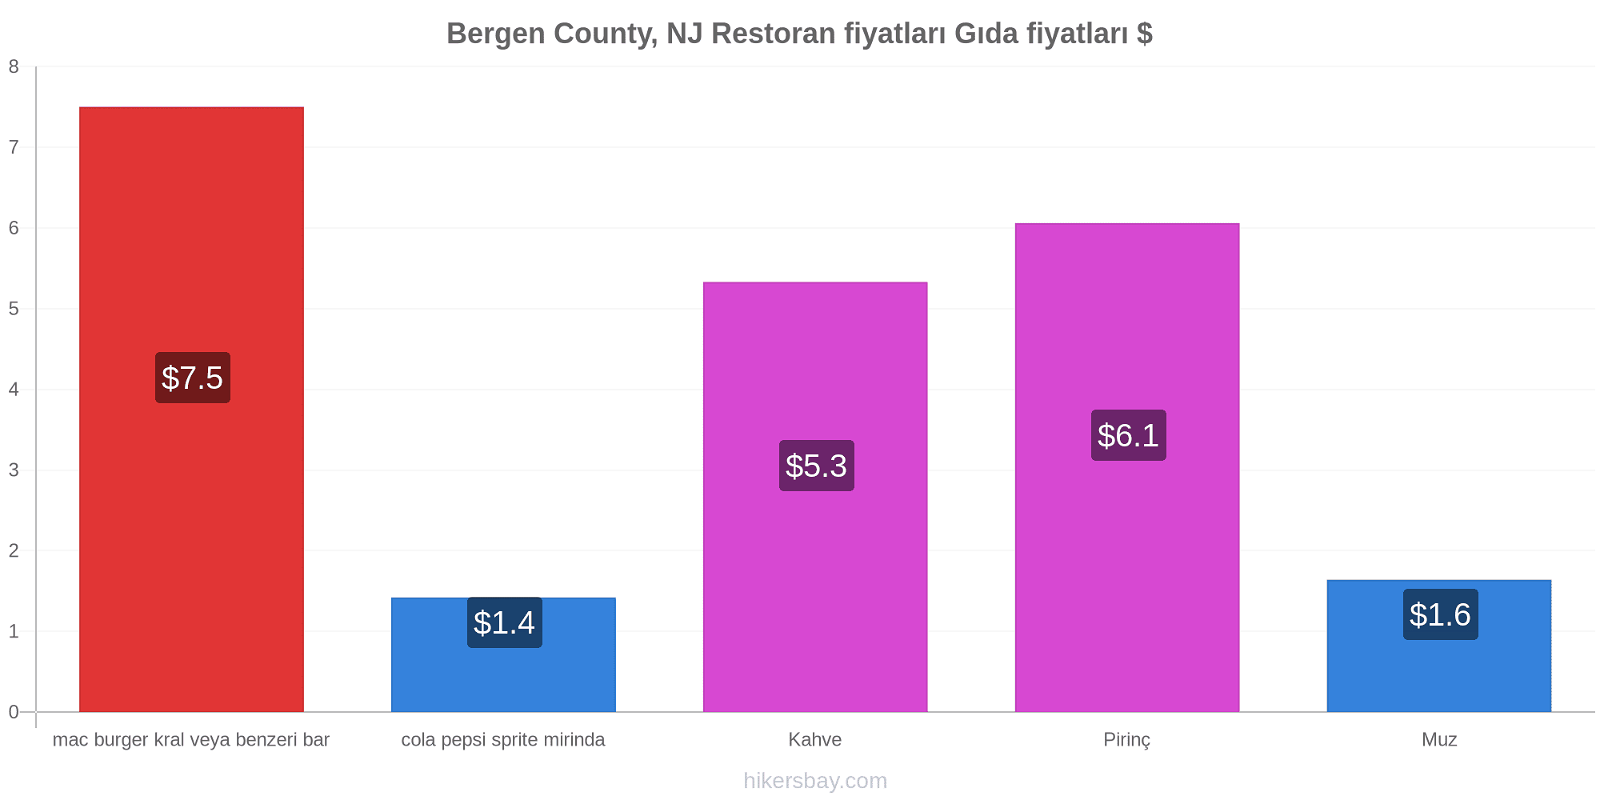 Bergen County, NJ fiyat değişiklikleri hikersbay.com